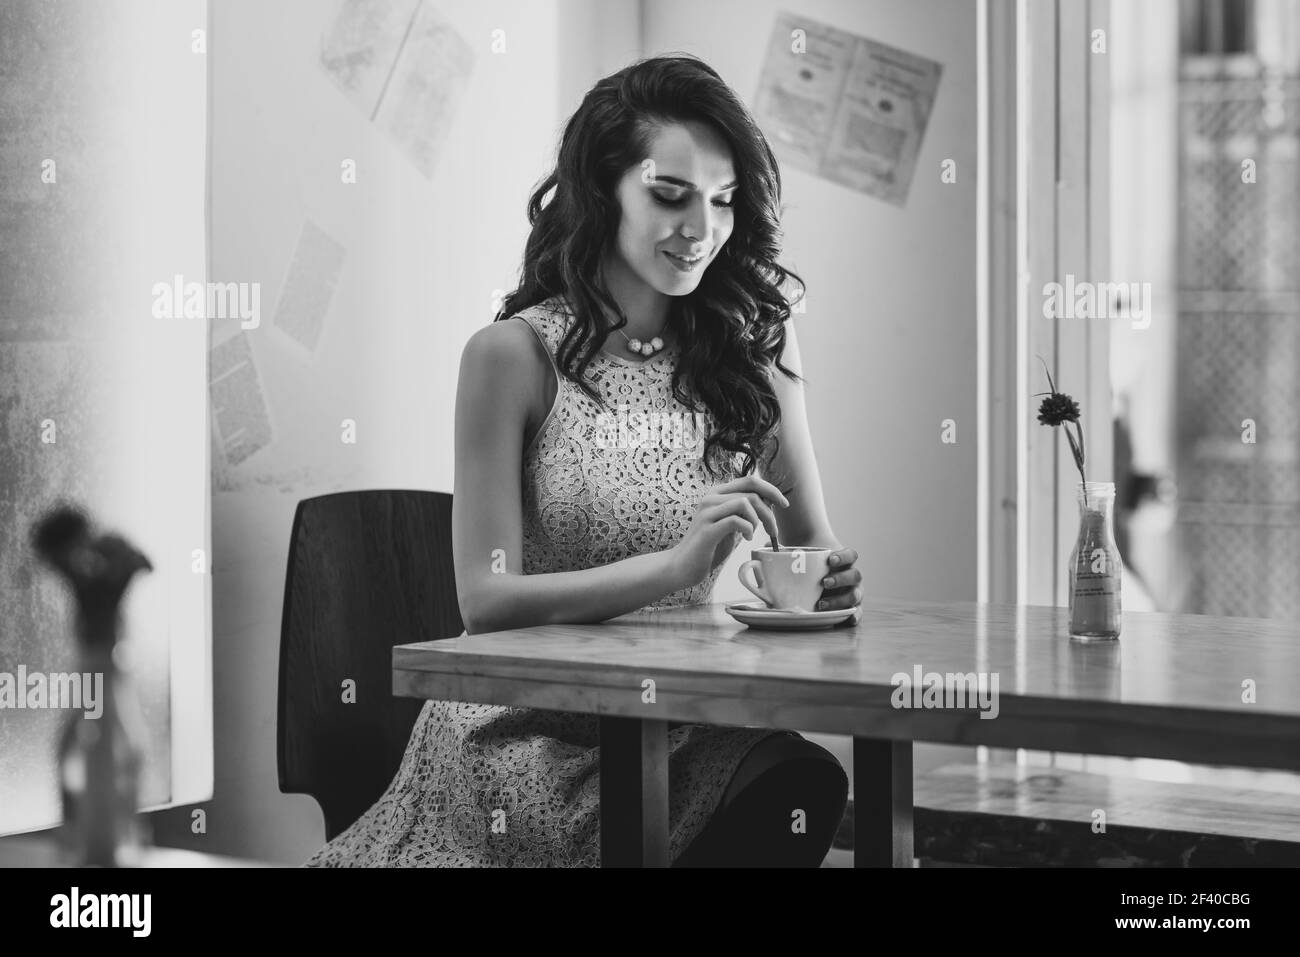 Jeune femme assise dans le quartier branché d'intérieur café urbain déménagement cuillerée à thé dans une tasse à café. Jeune femme caucasienne Cool moderne modèle dans son 20s. Banque D'Images